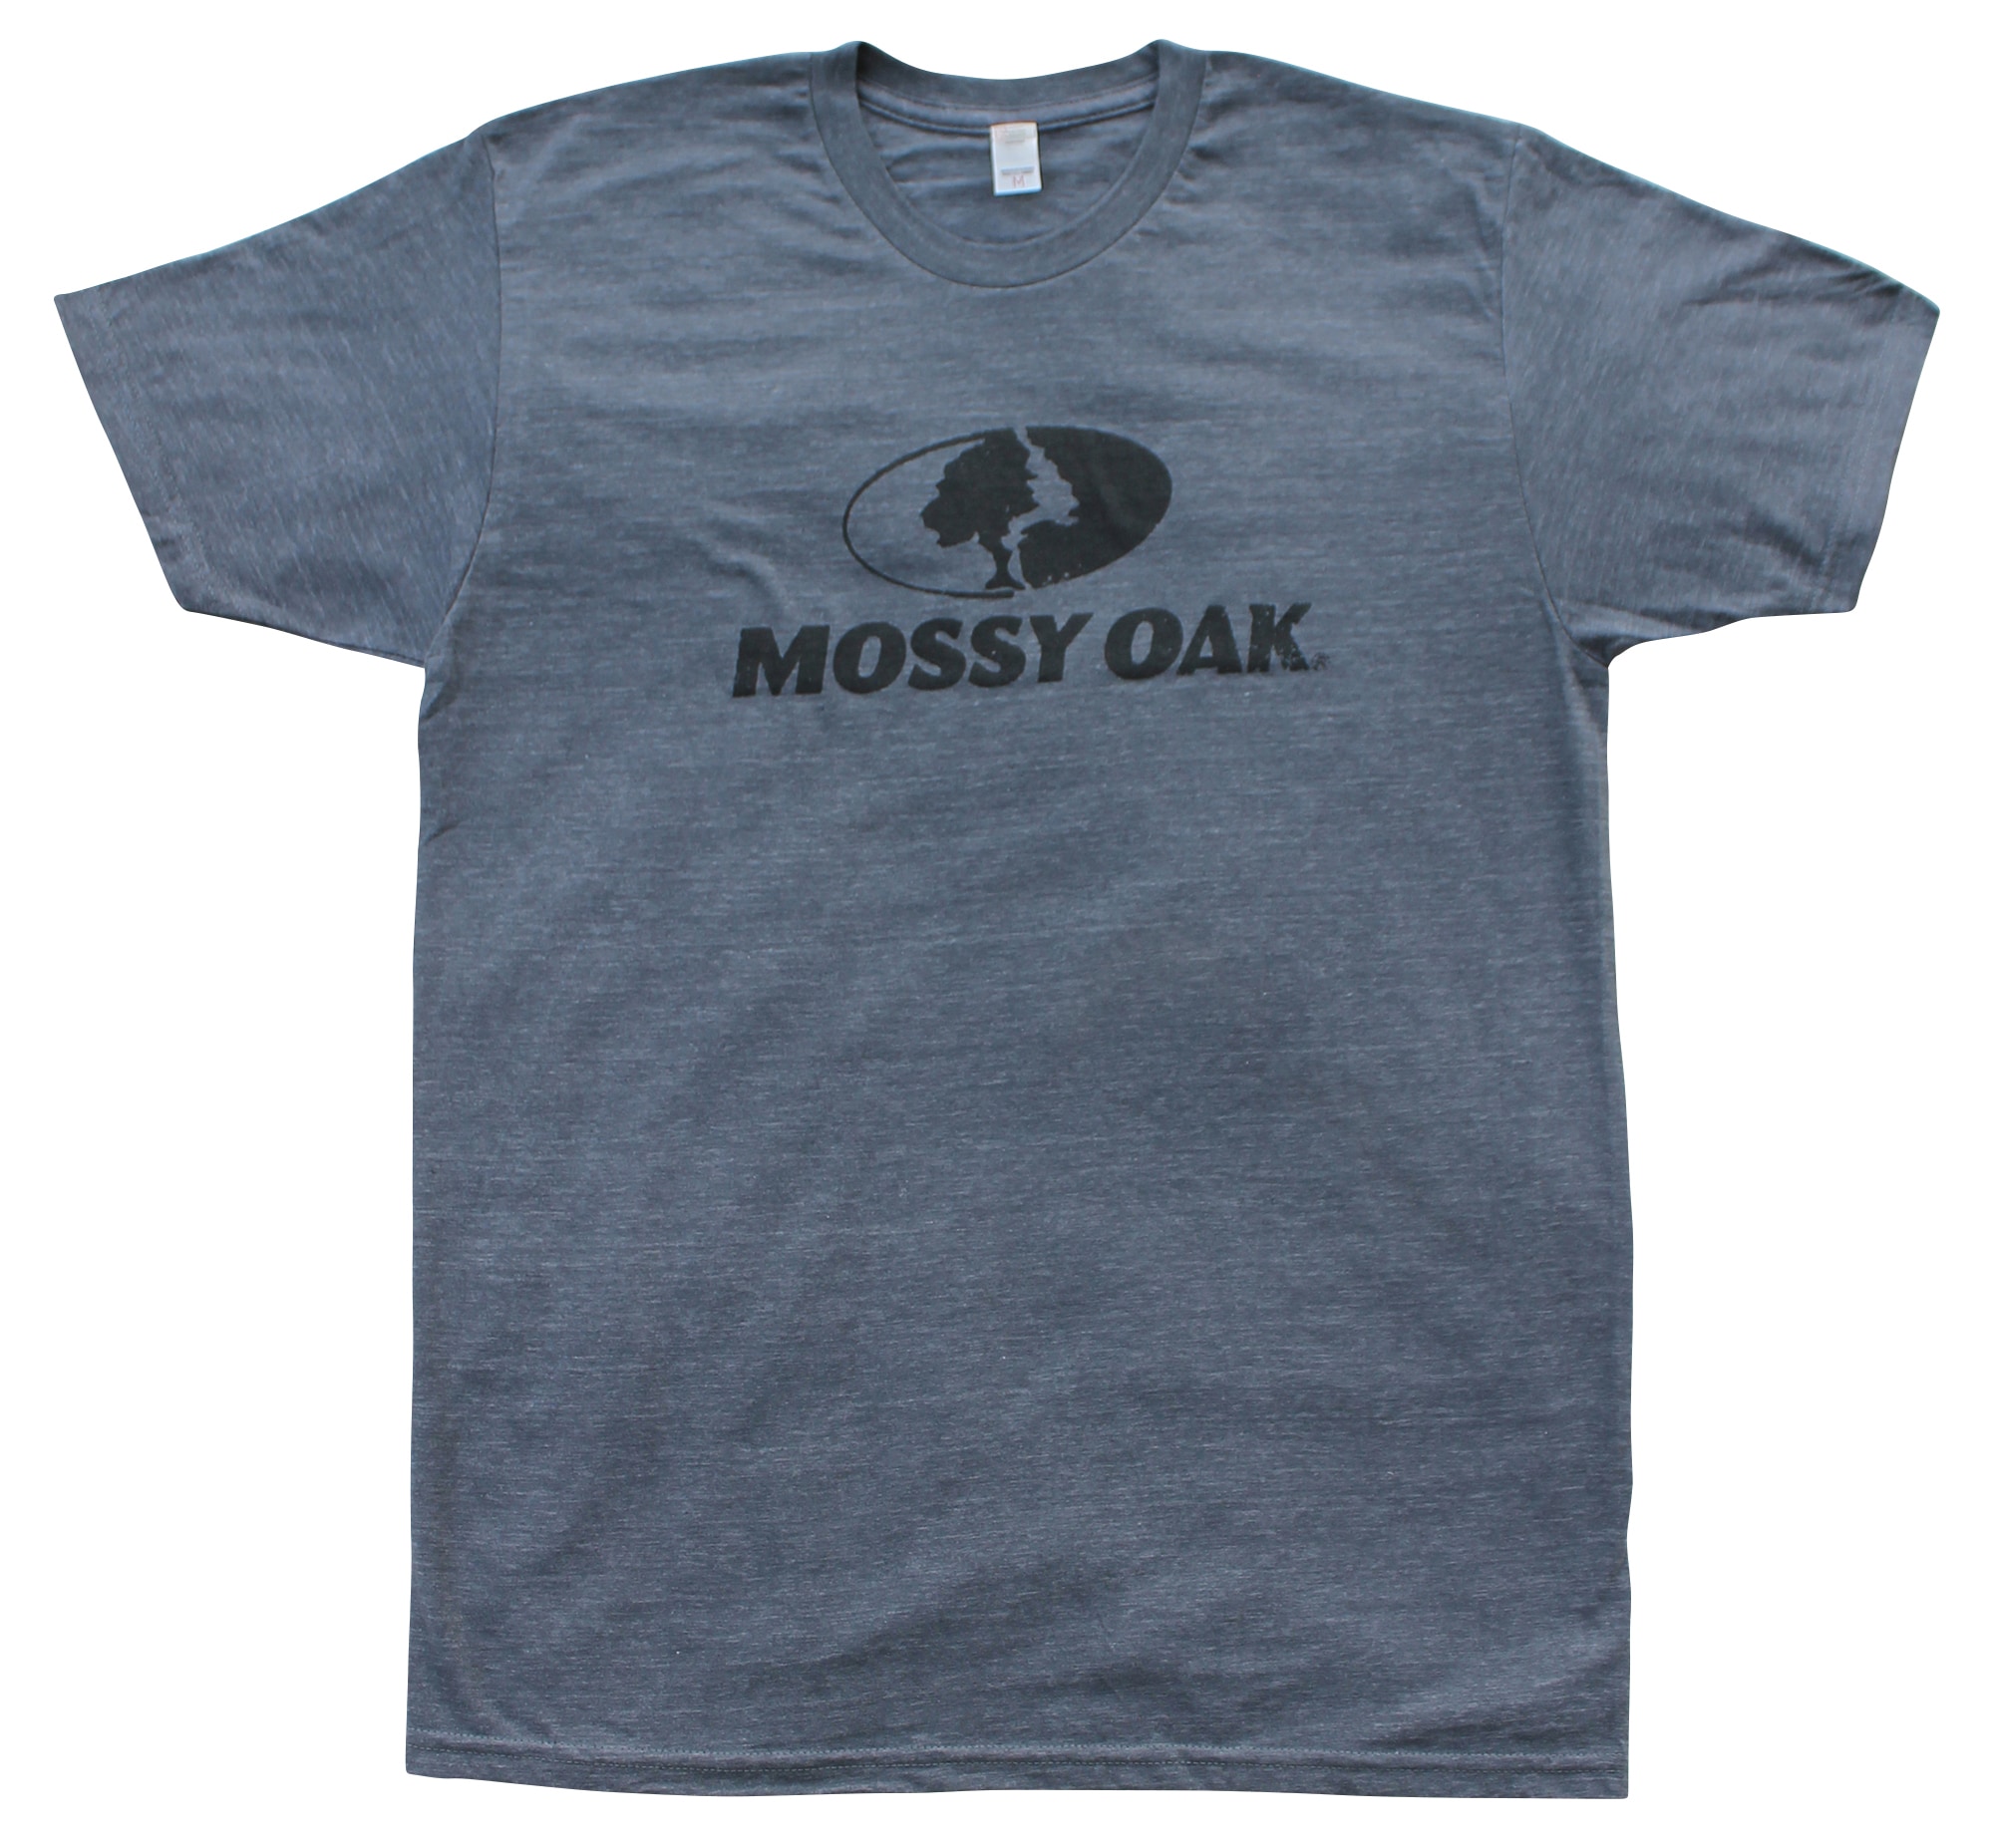 Mossy Oak Tops & Shirts at